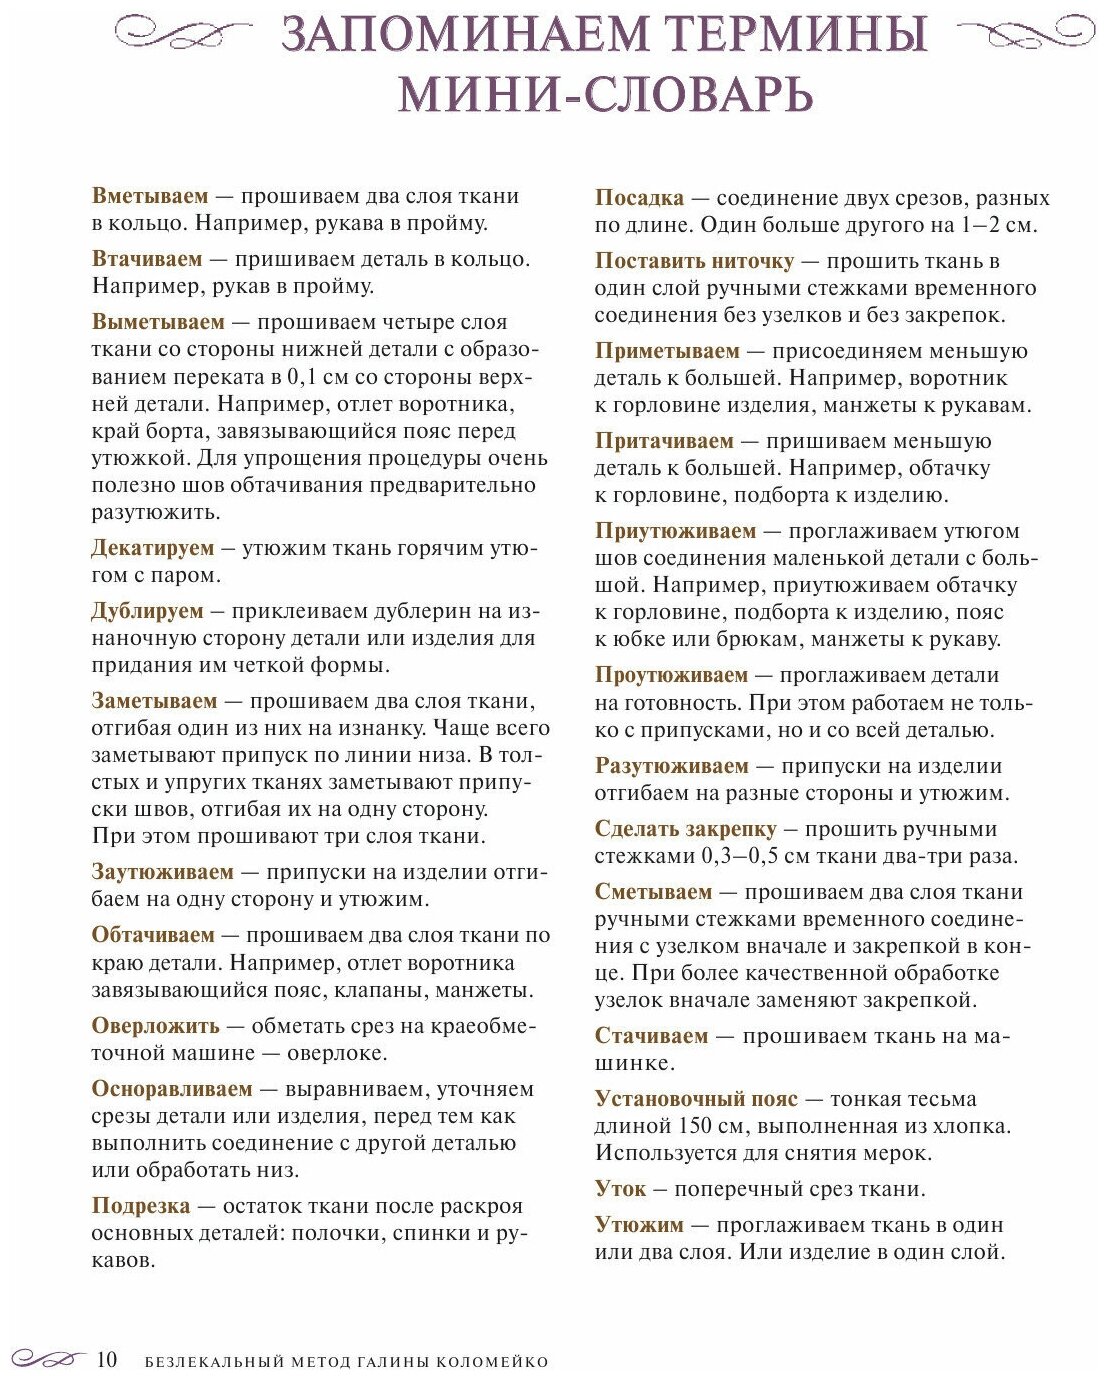 Большая энциклопедия кройки и шитья. Безлекальный метод - фото №20